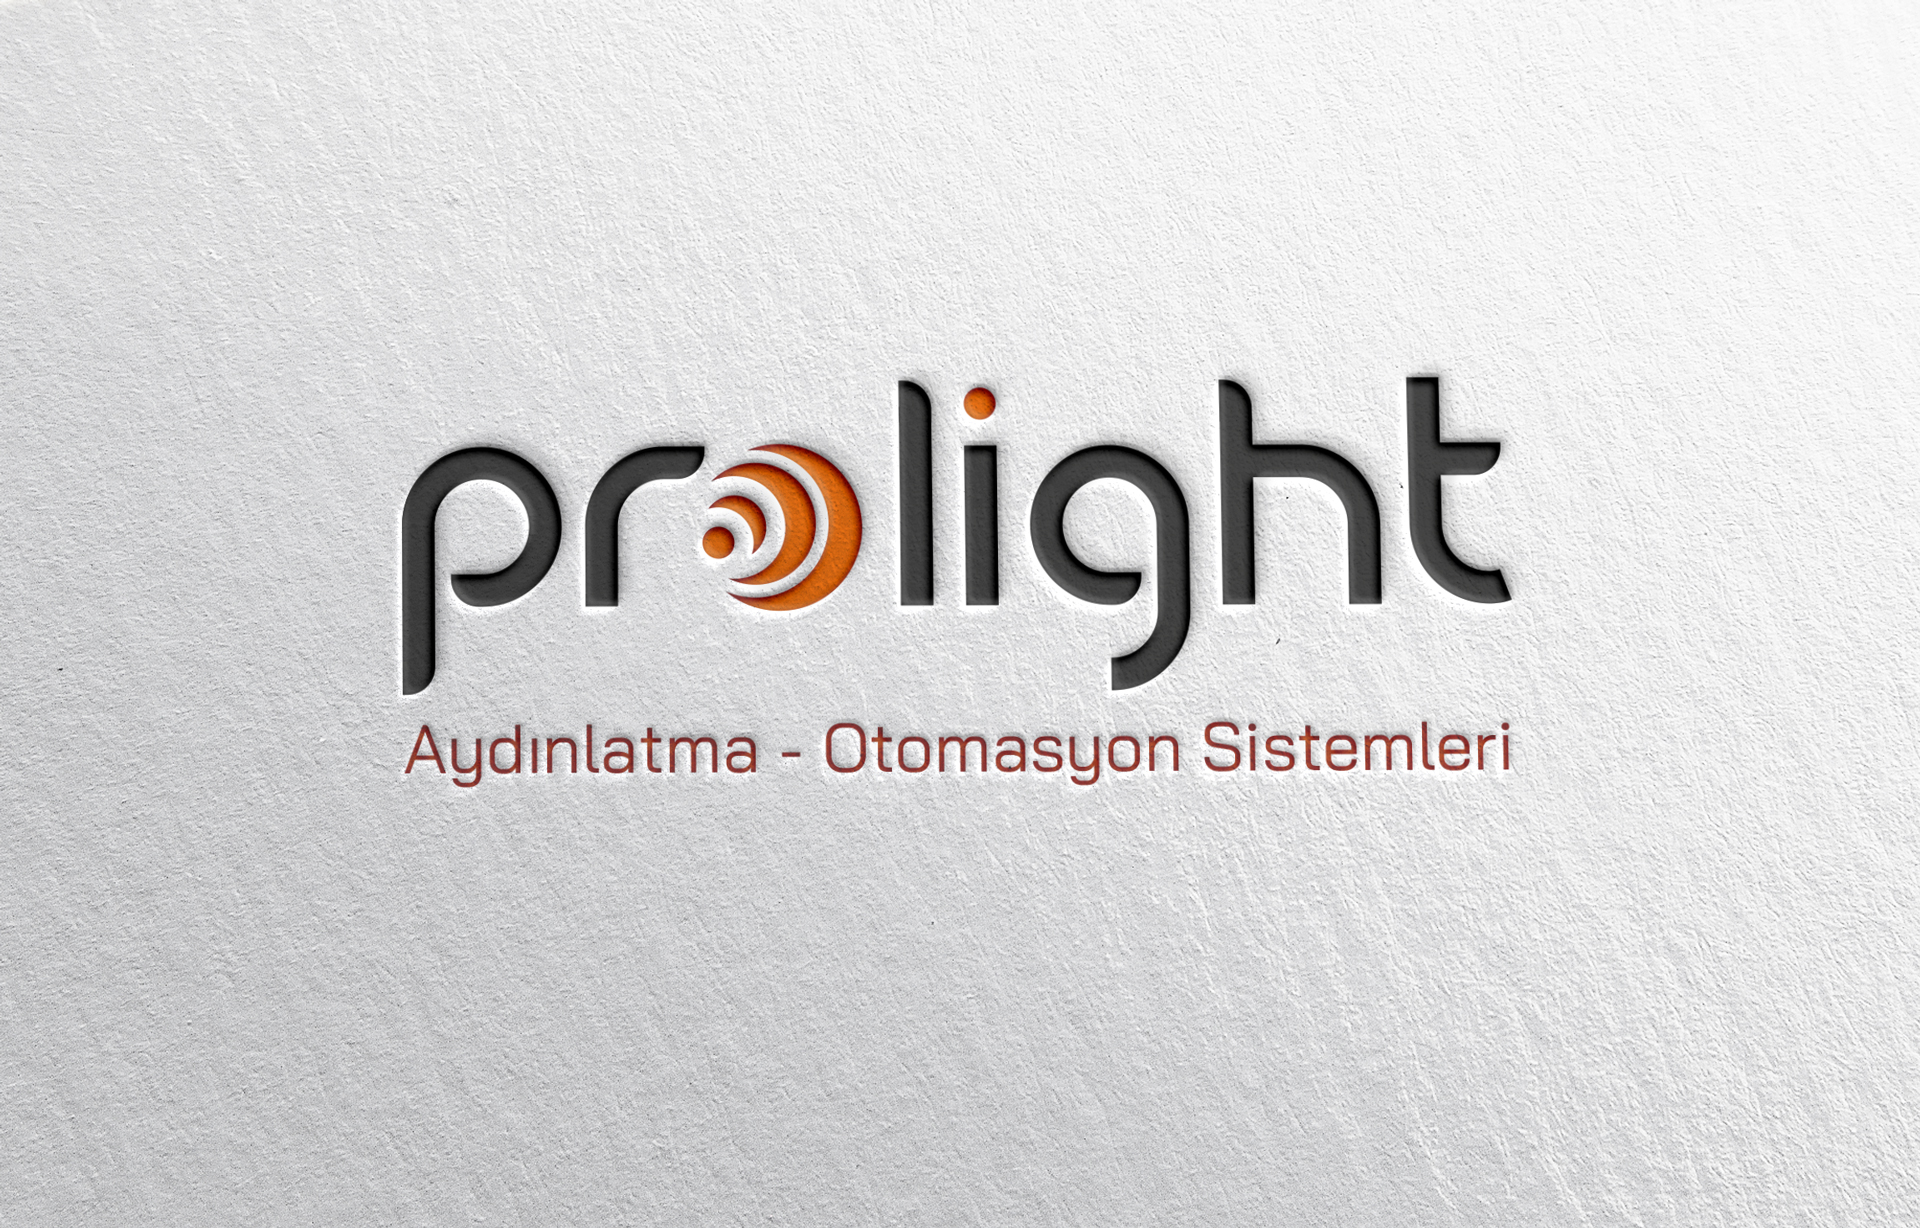 Prolight